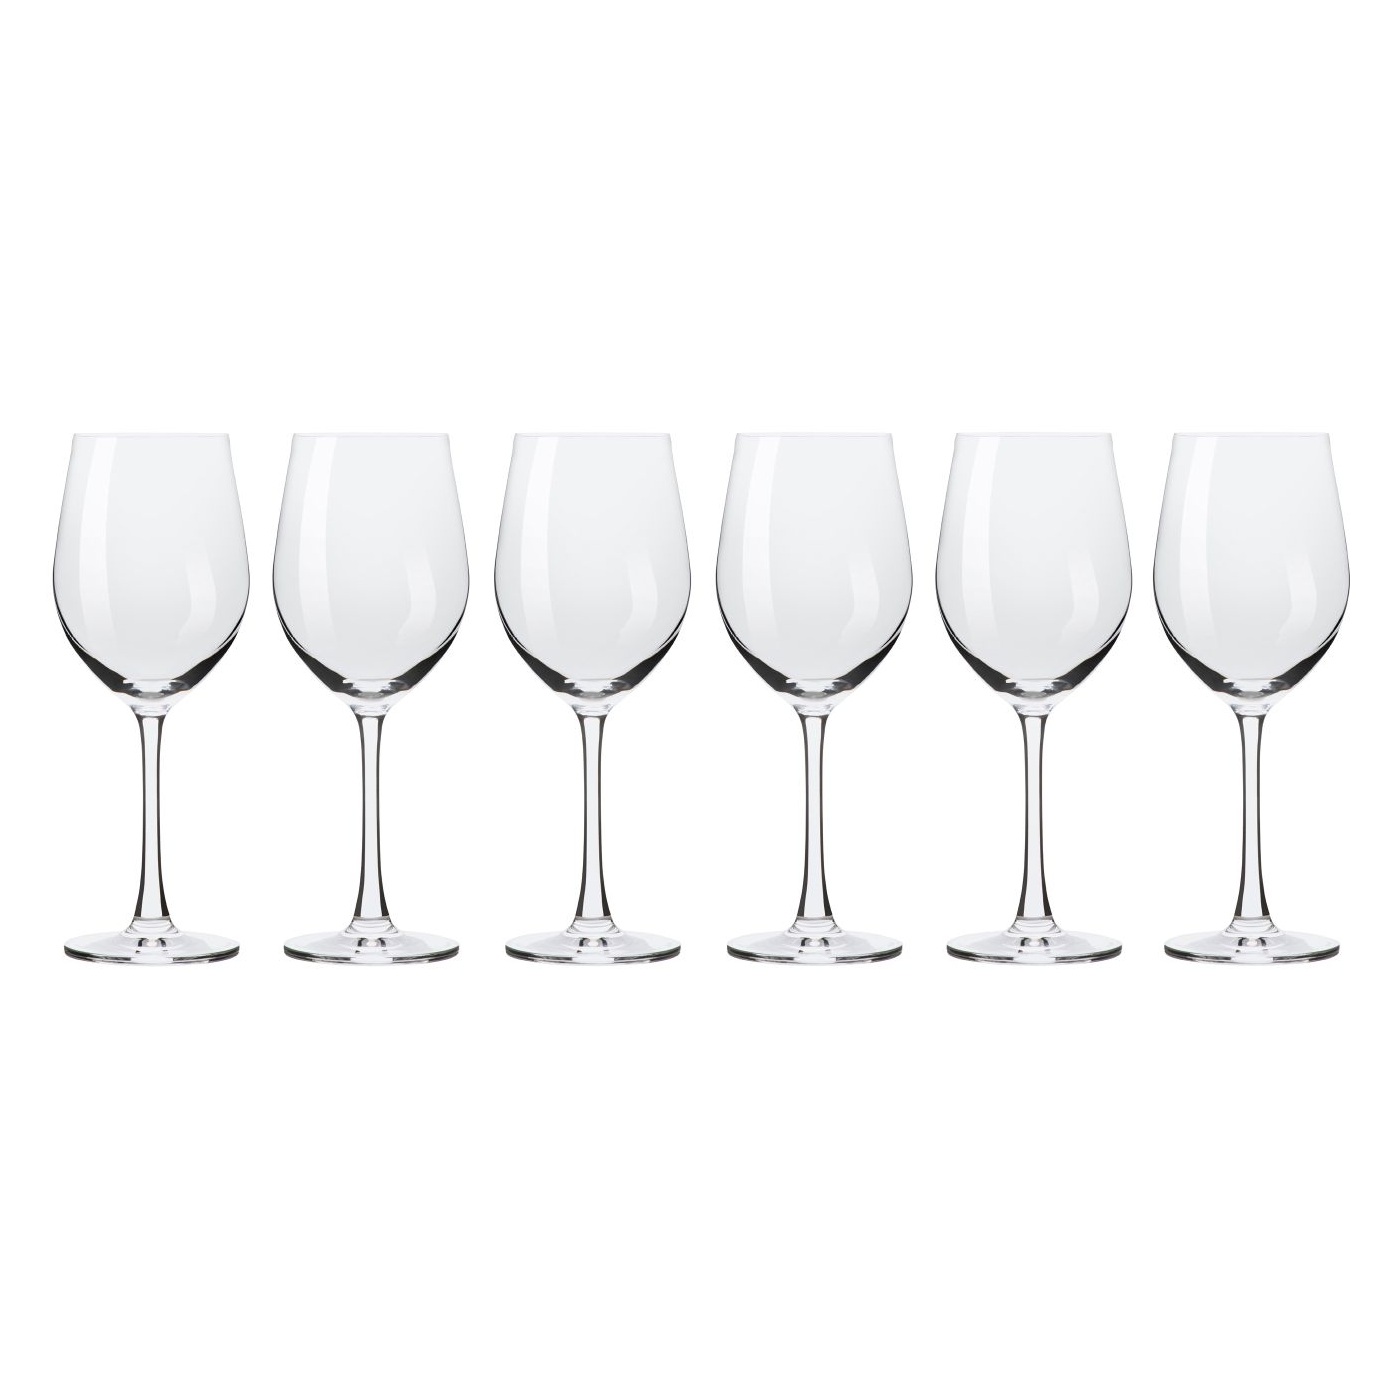 Набор бокалов Maxwell & Williams Cosmopolitan для вина 0,425 л adriana бокалы для белого вина 6 шт